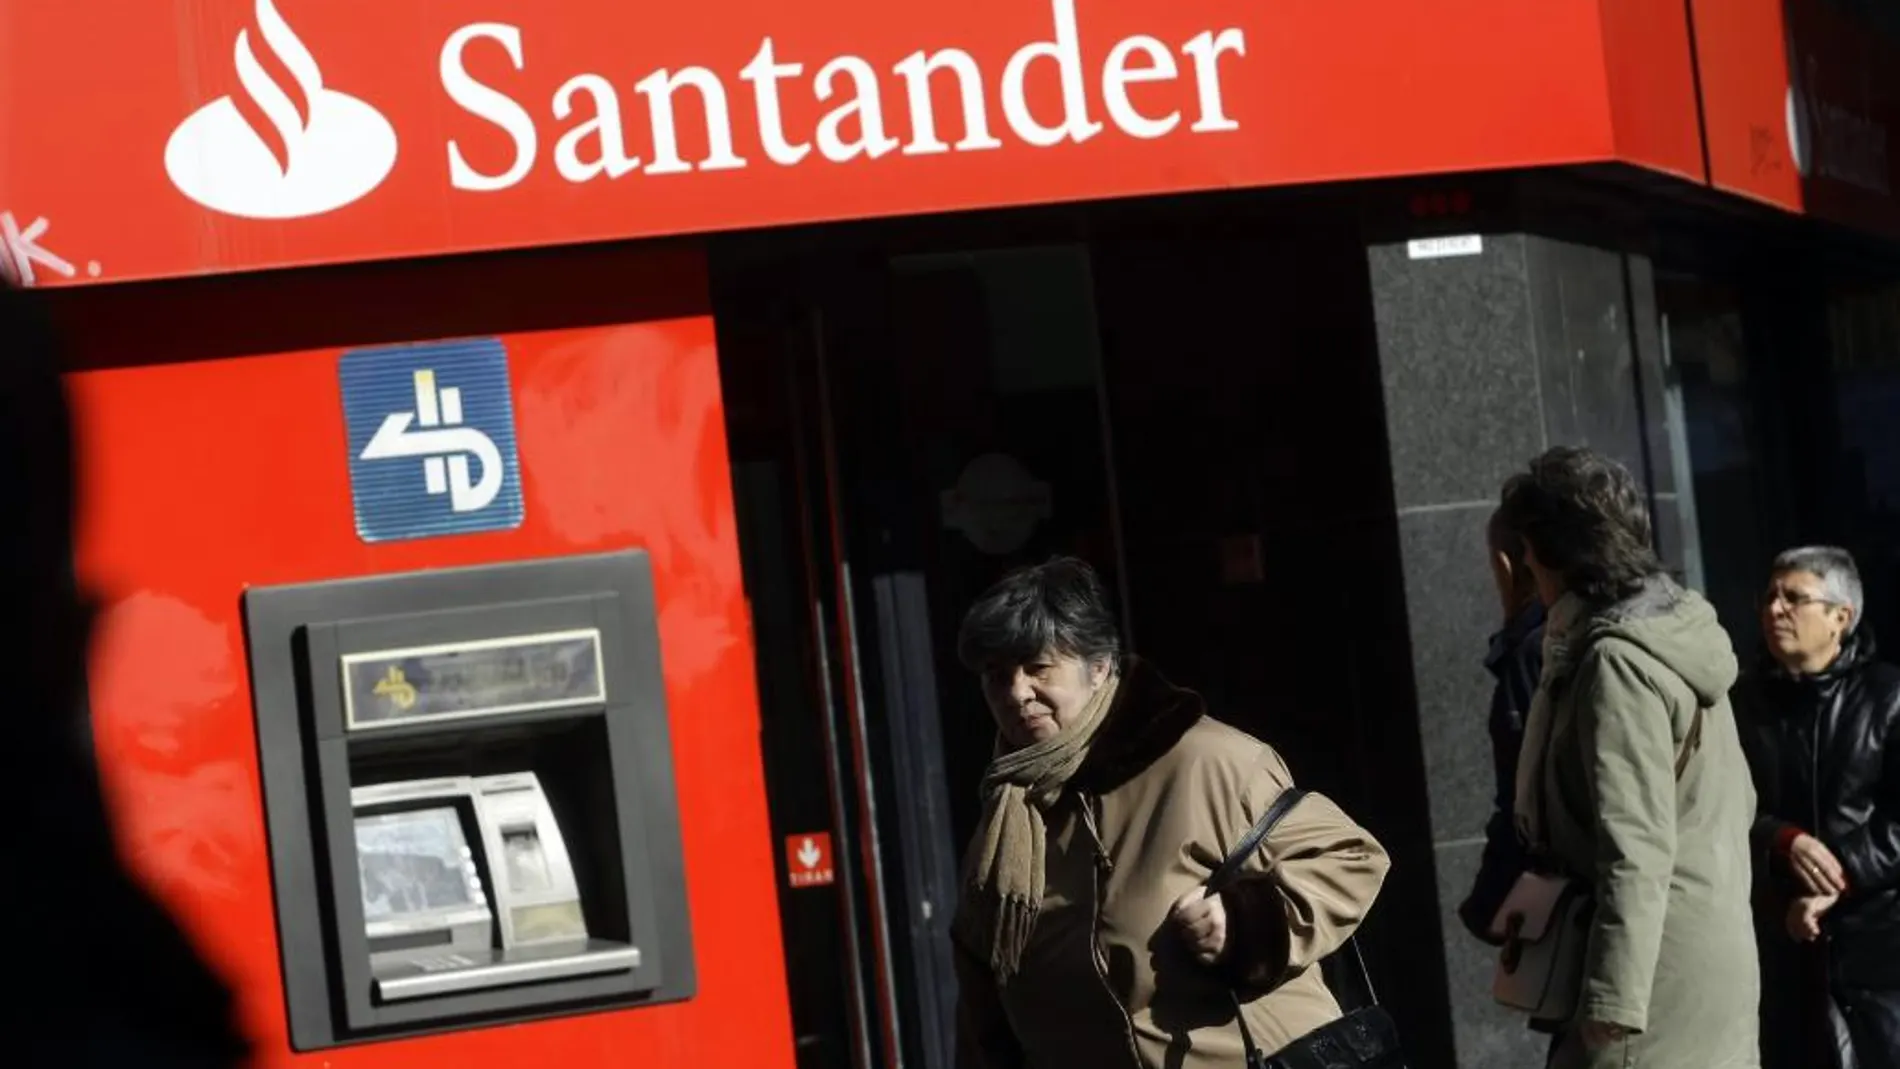 El Santander ganó el 50% más hasta junio tras reducir costes y provisiones